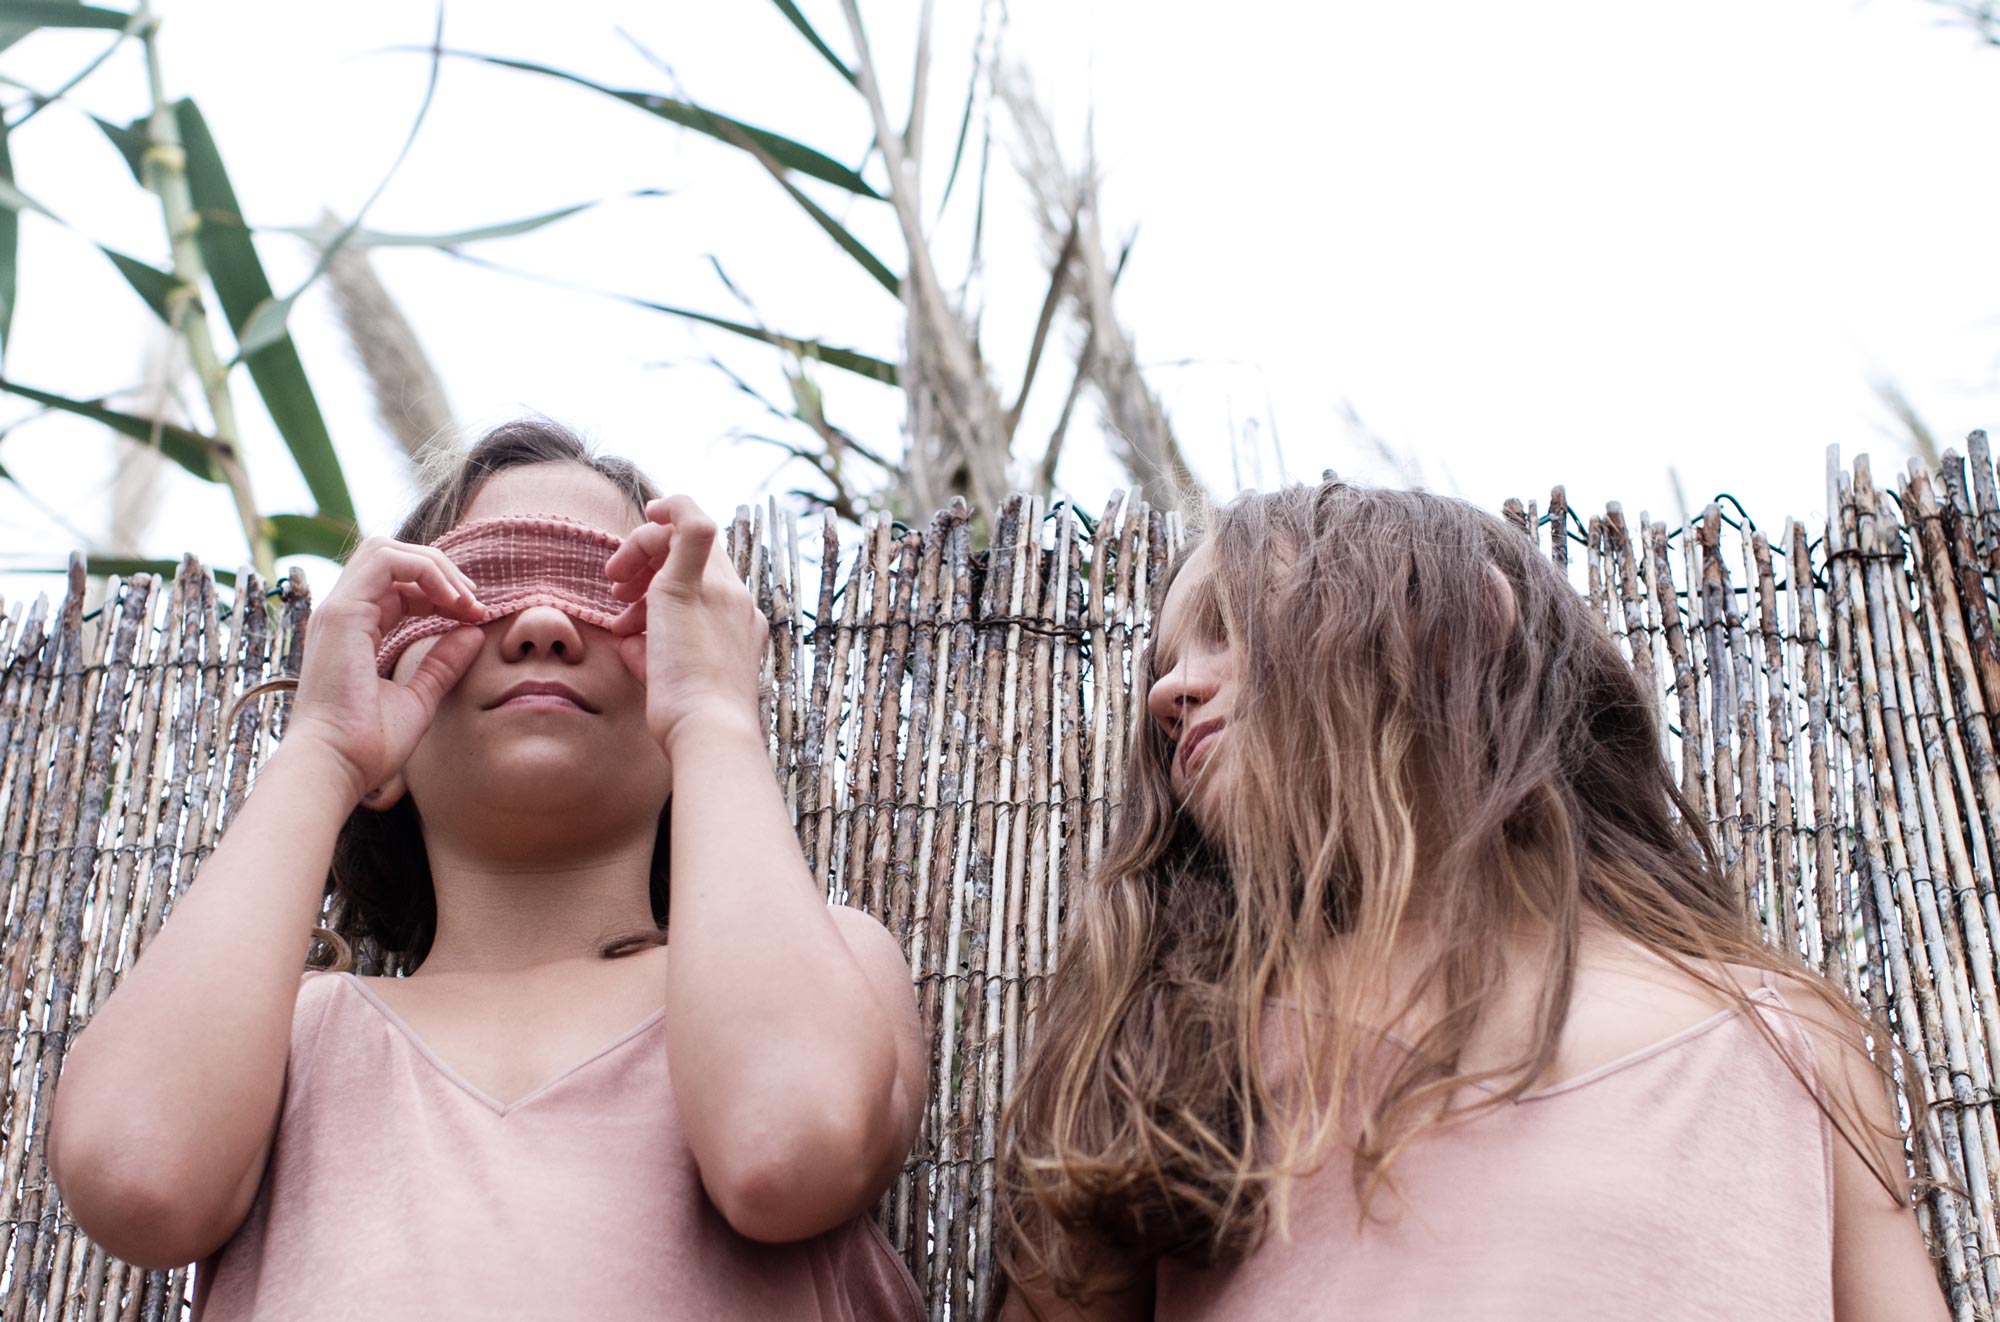 Twins portrait editorial by Maria Santos - Fotografía creativa en Ibiza